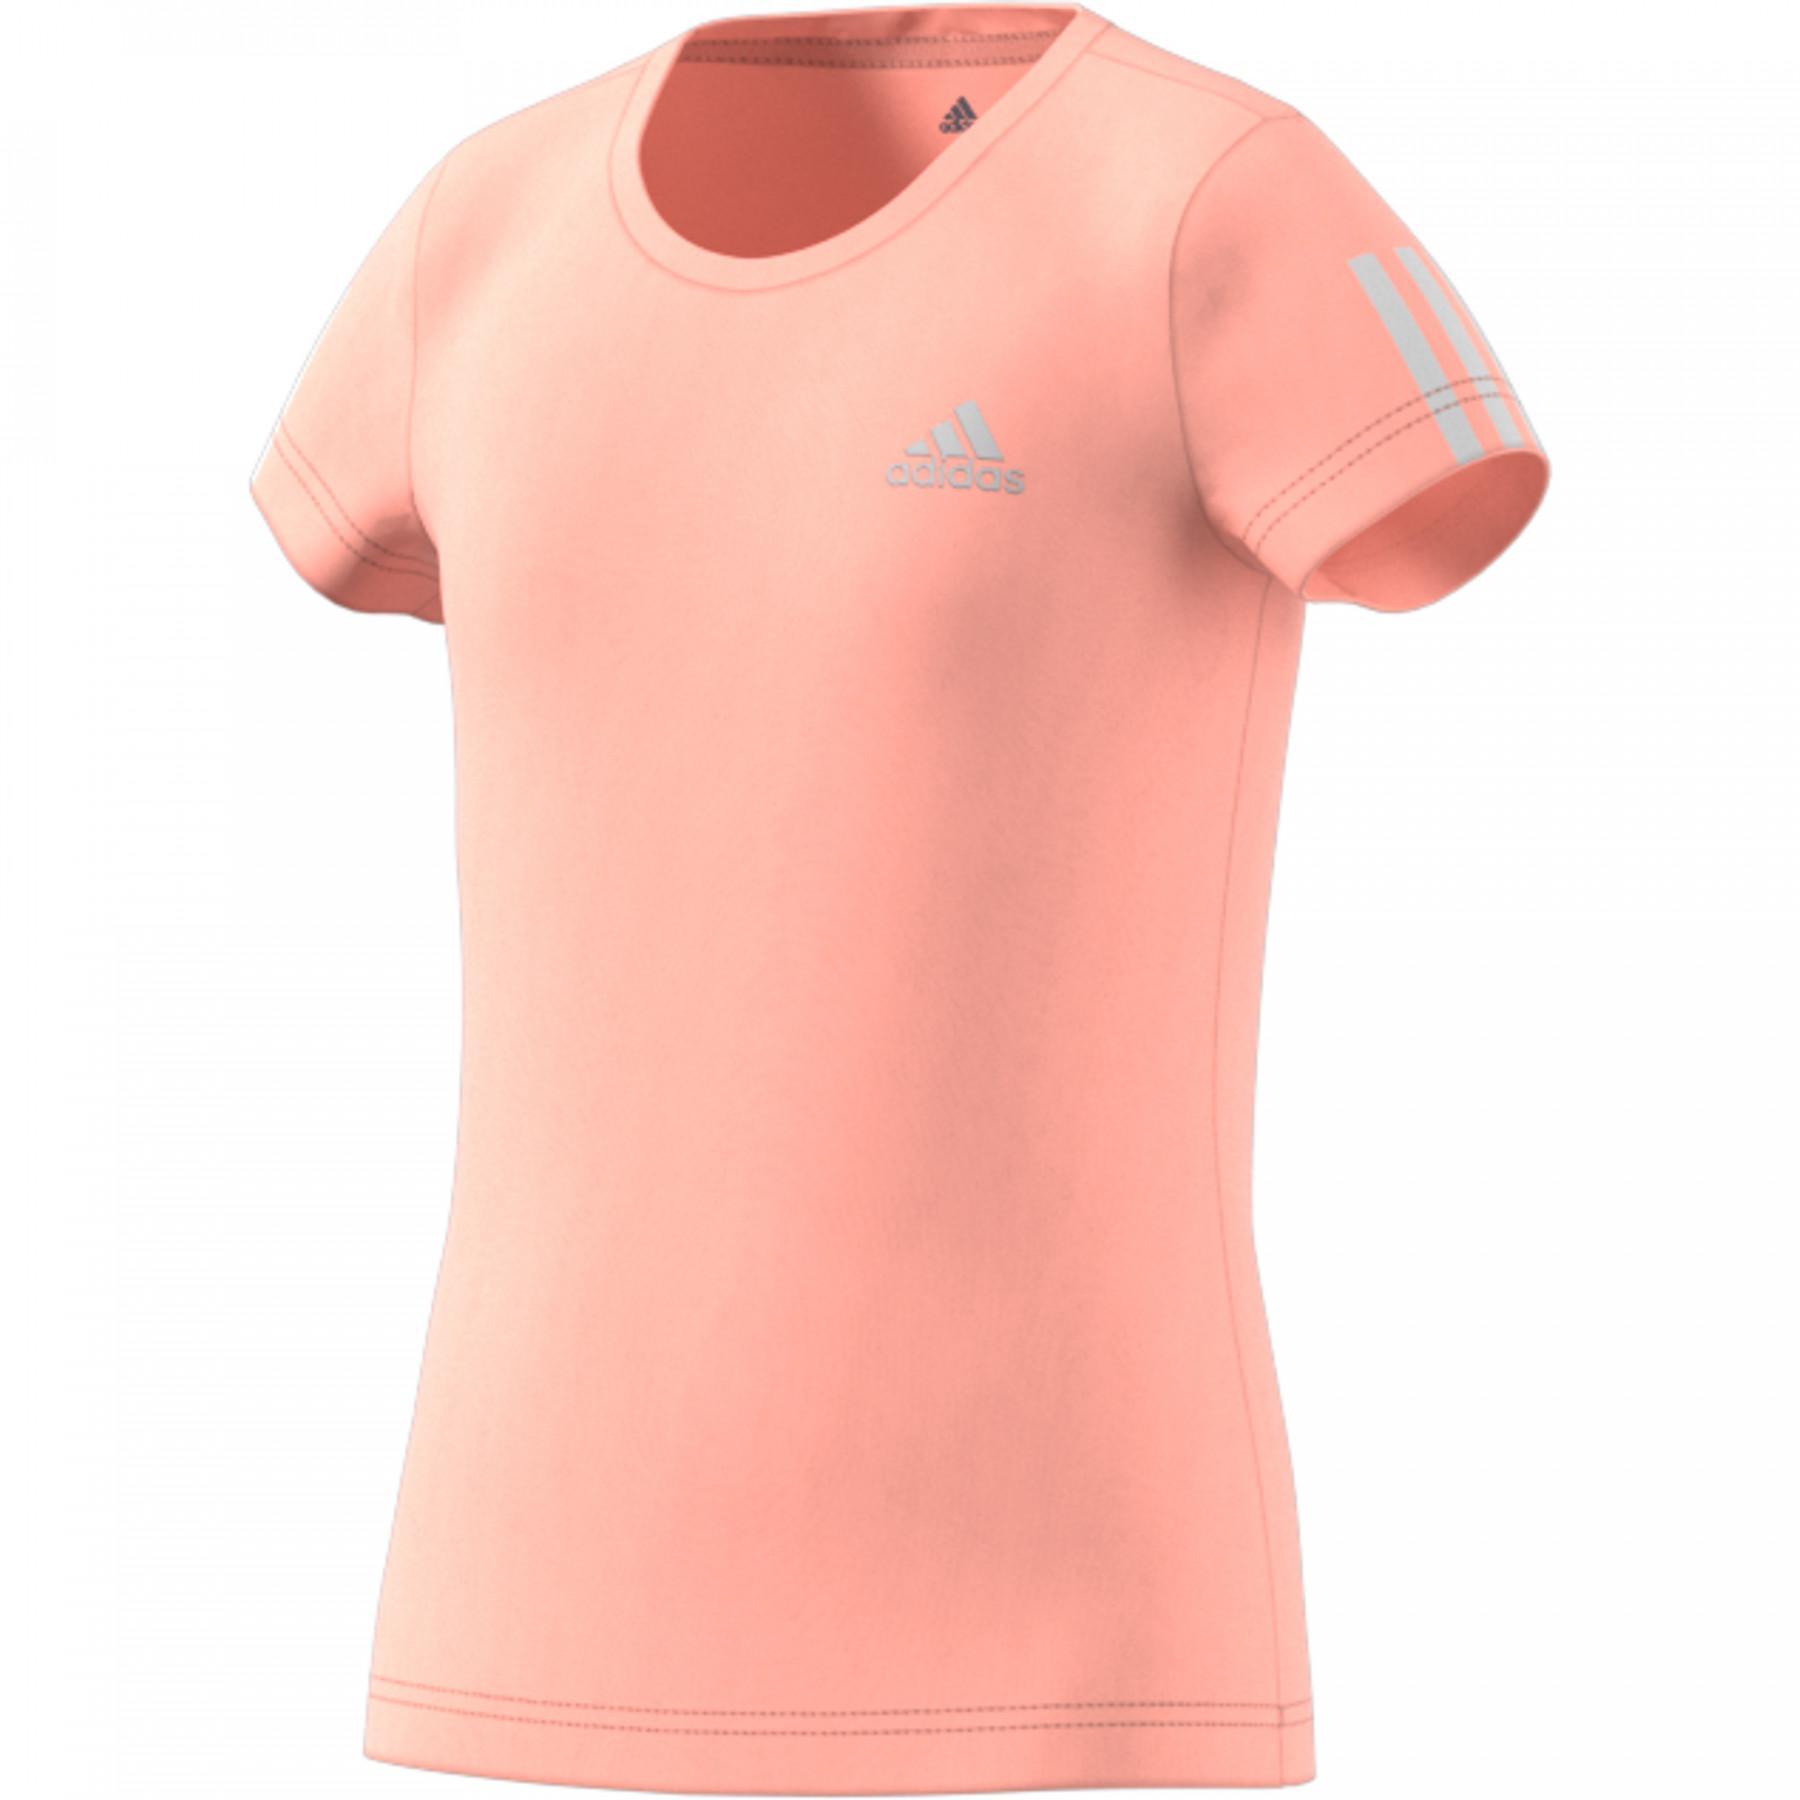 Camiseta feminina adidas Equipment